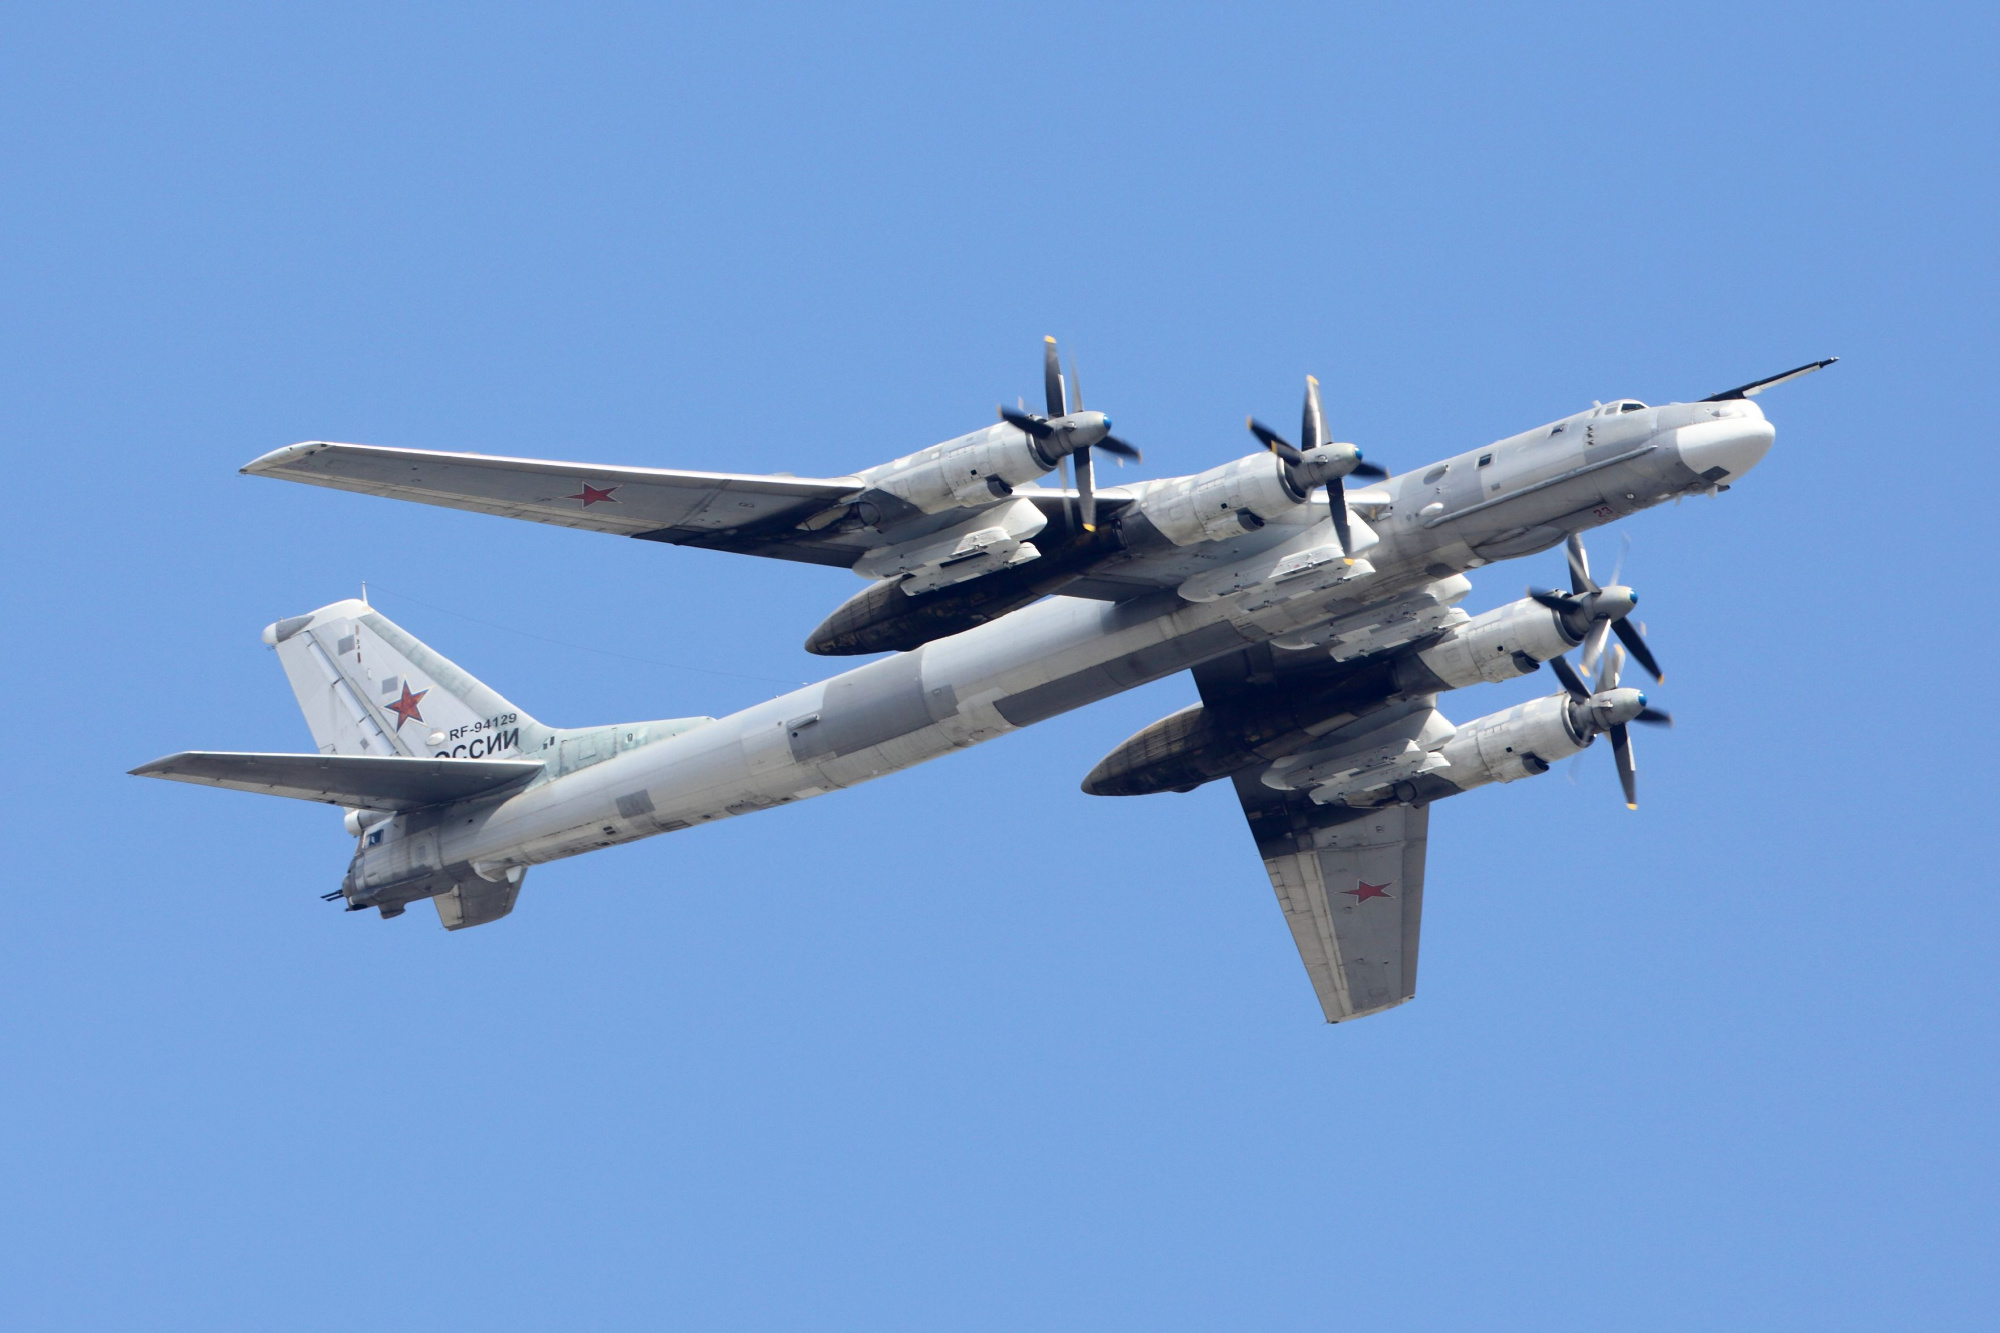 Οι Ρώσοι μετέφεραν στρατηγικά βομβαρδιστικά κοντά στην Ουκρανία για να συντρίψουν την αντεπίθεση του Κιέβου